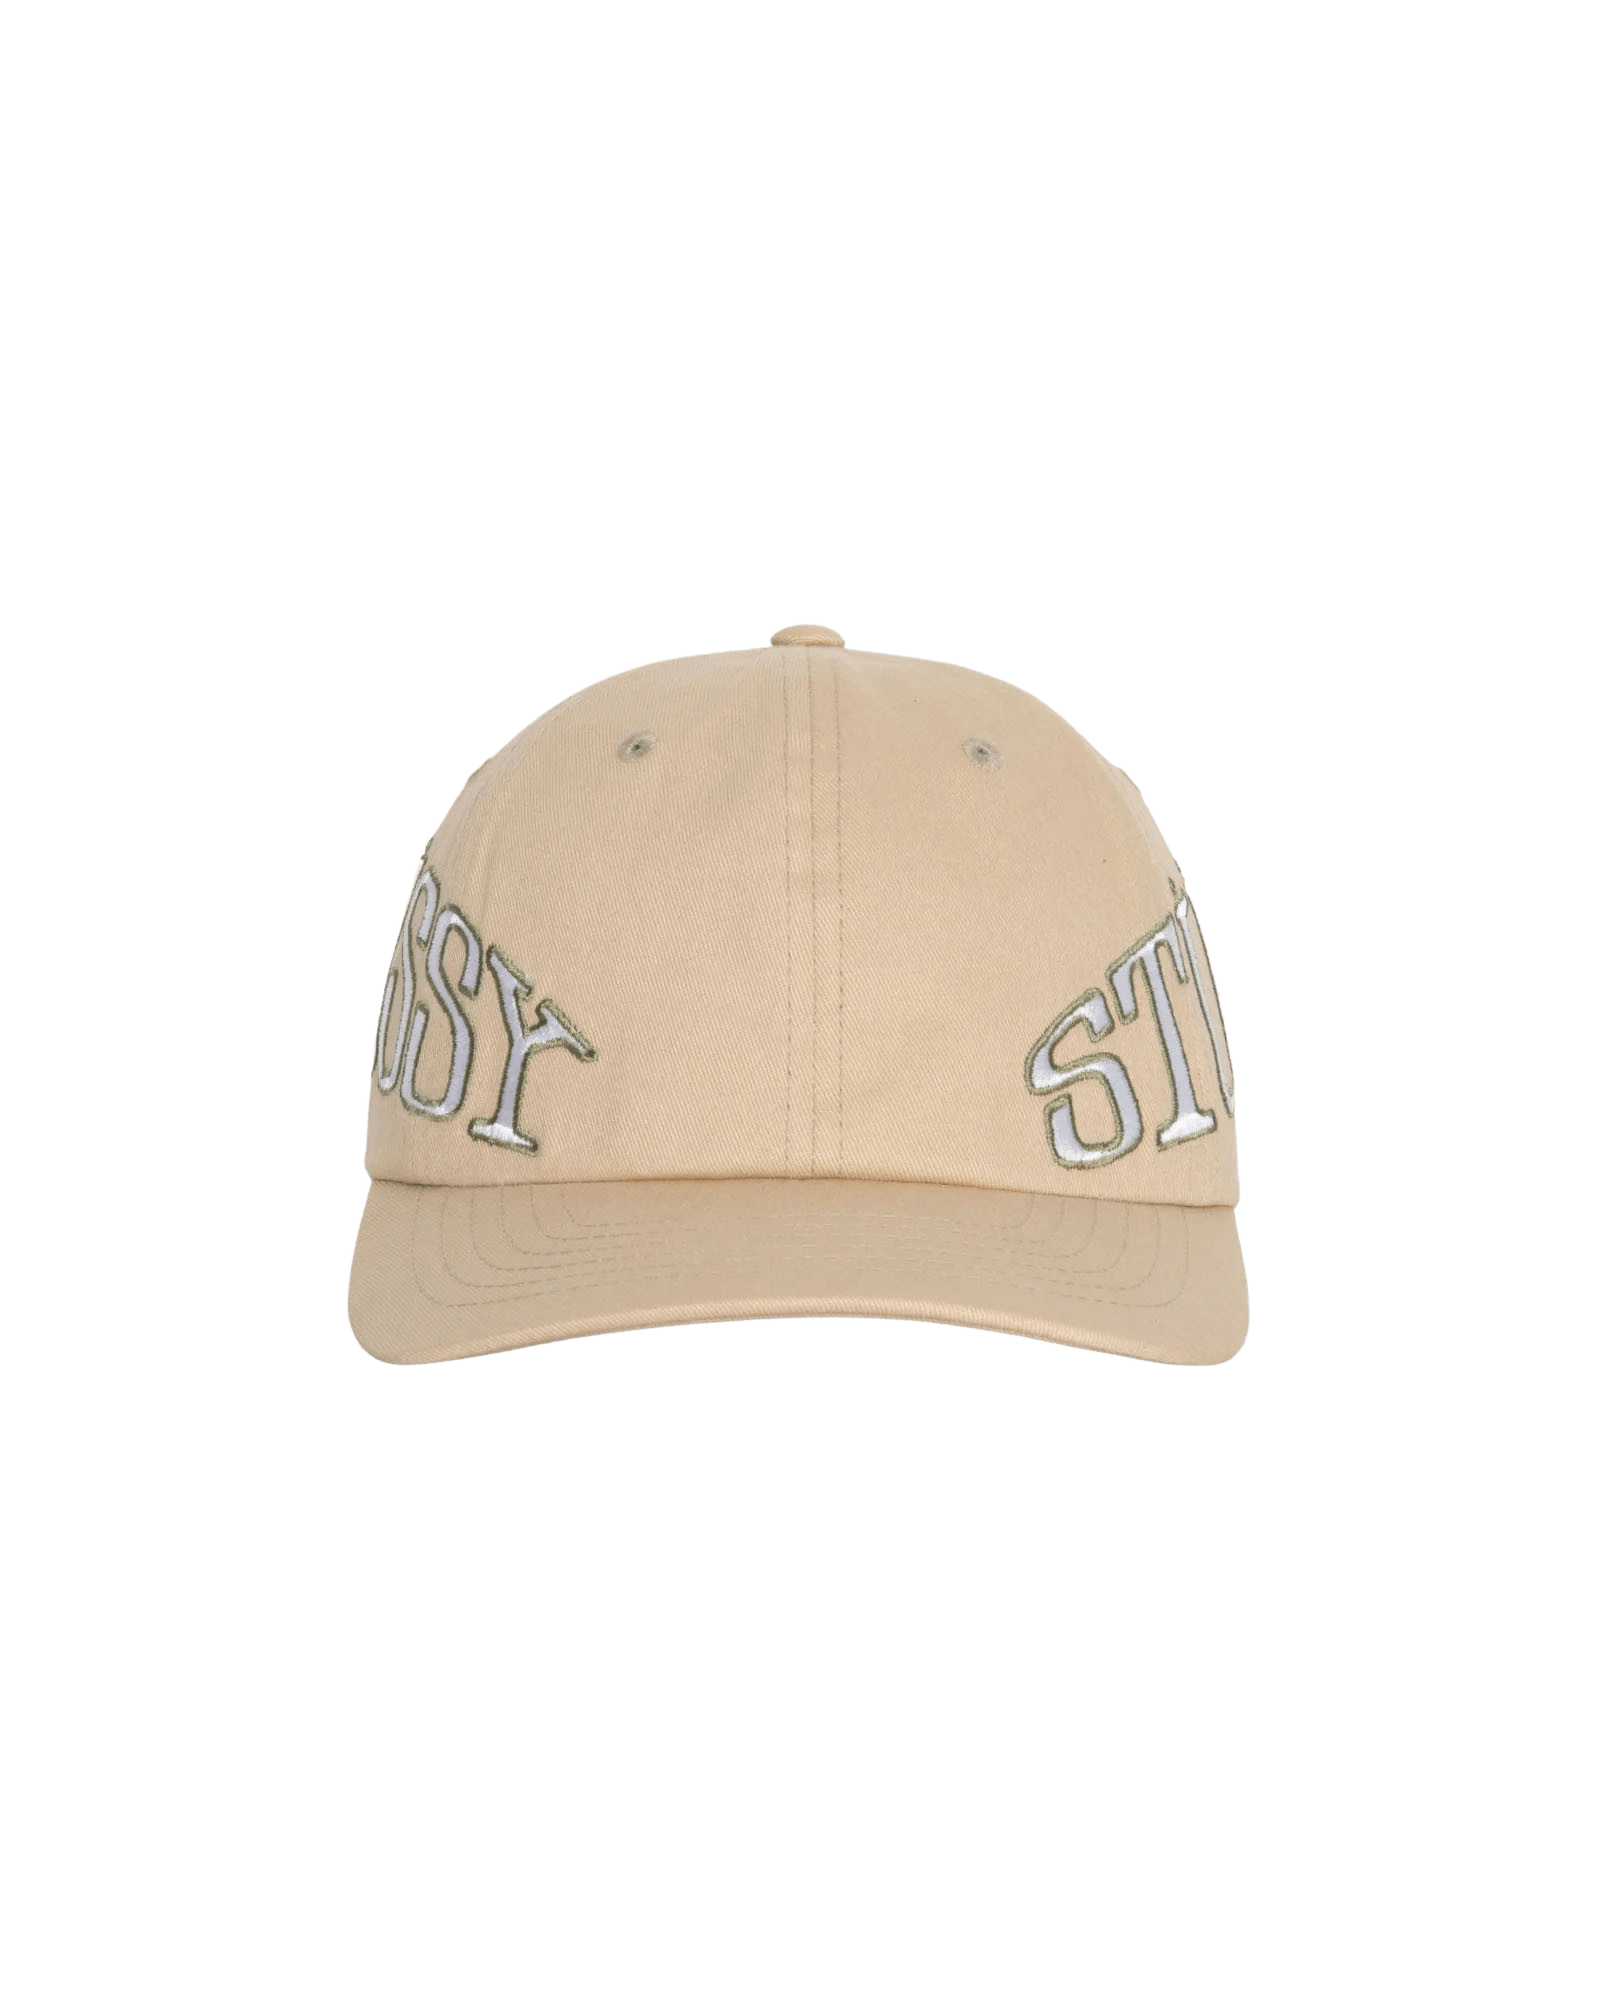 Arc Low Pro Strapback Cap $64 Stüssy Headwear Caps Beige